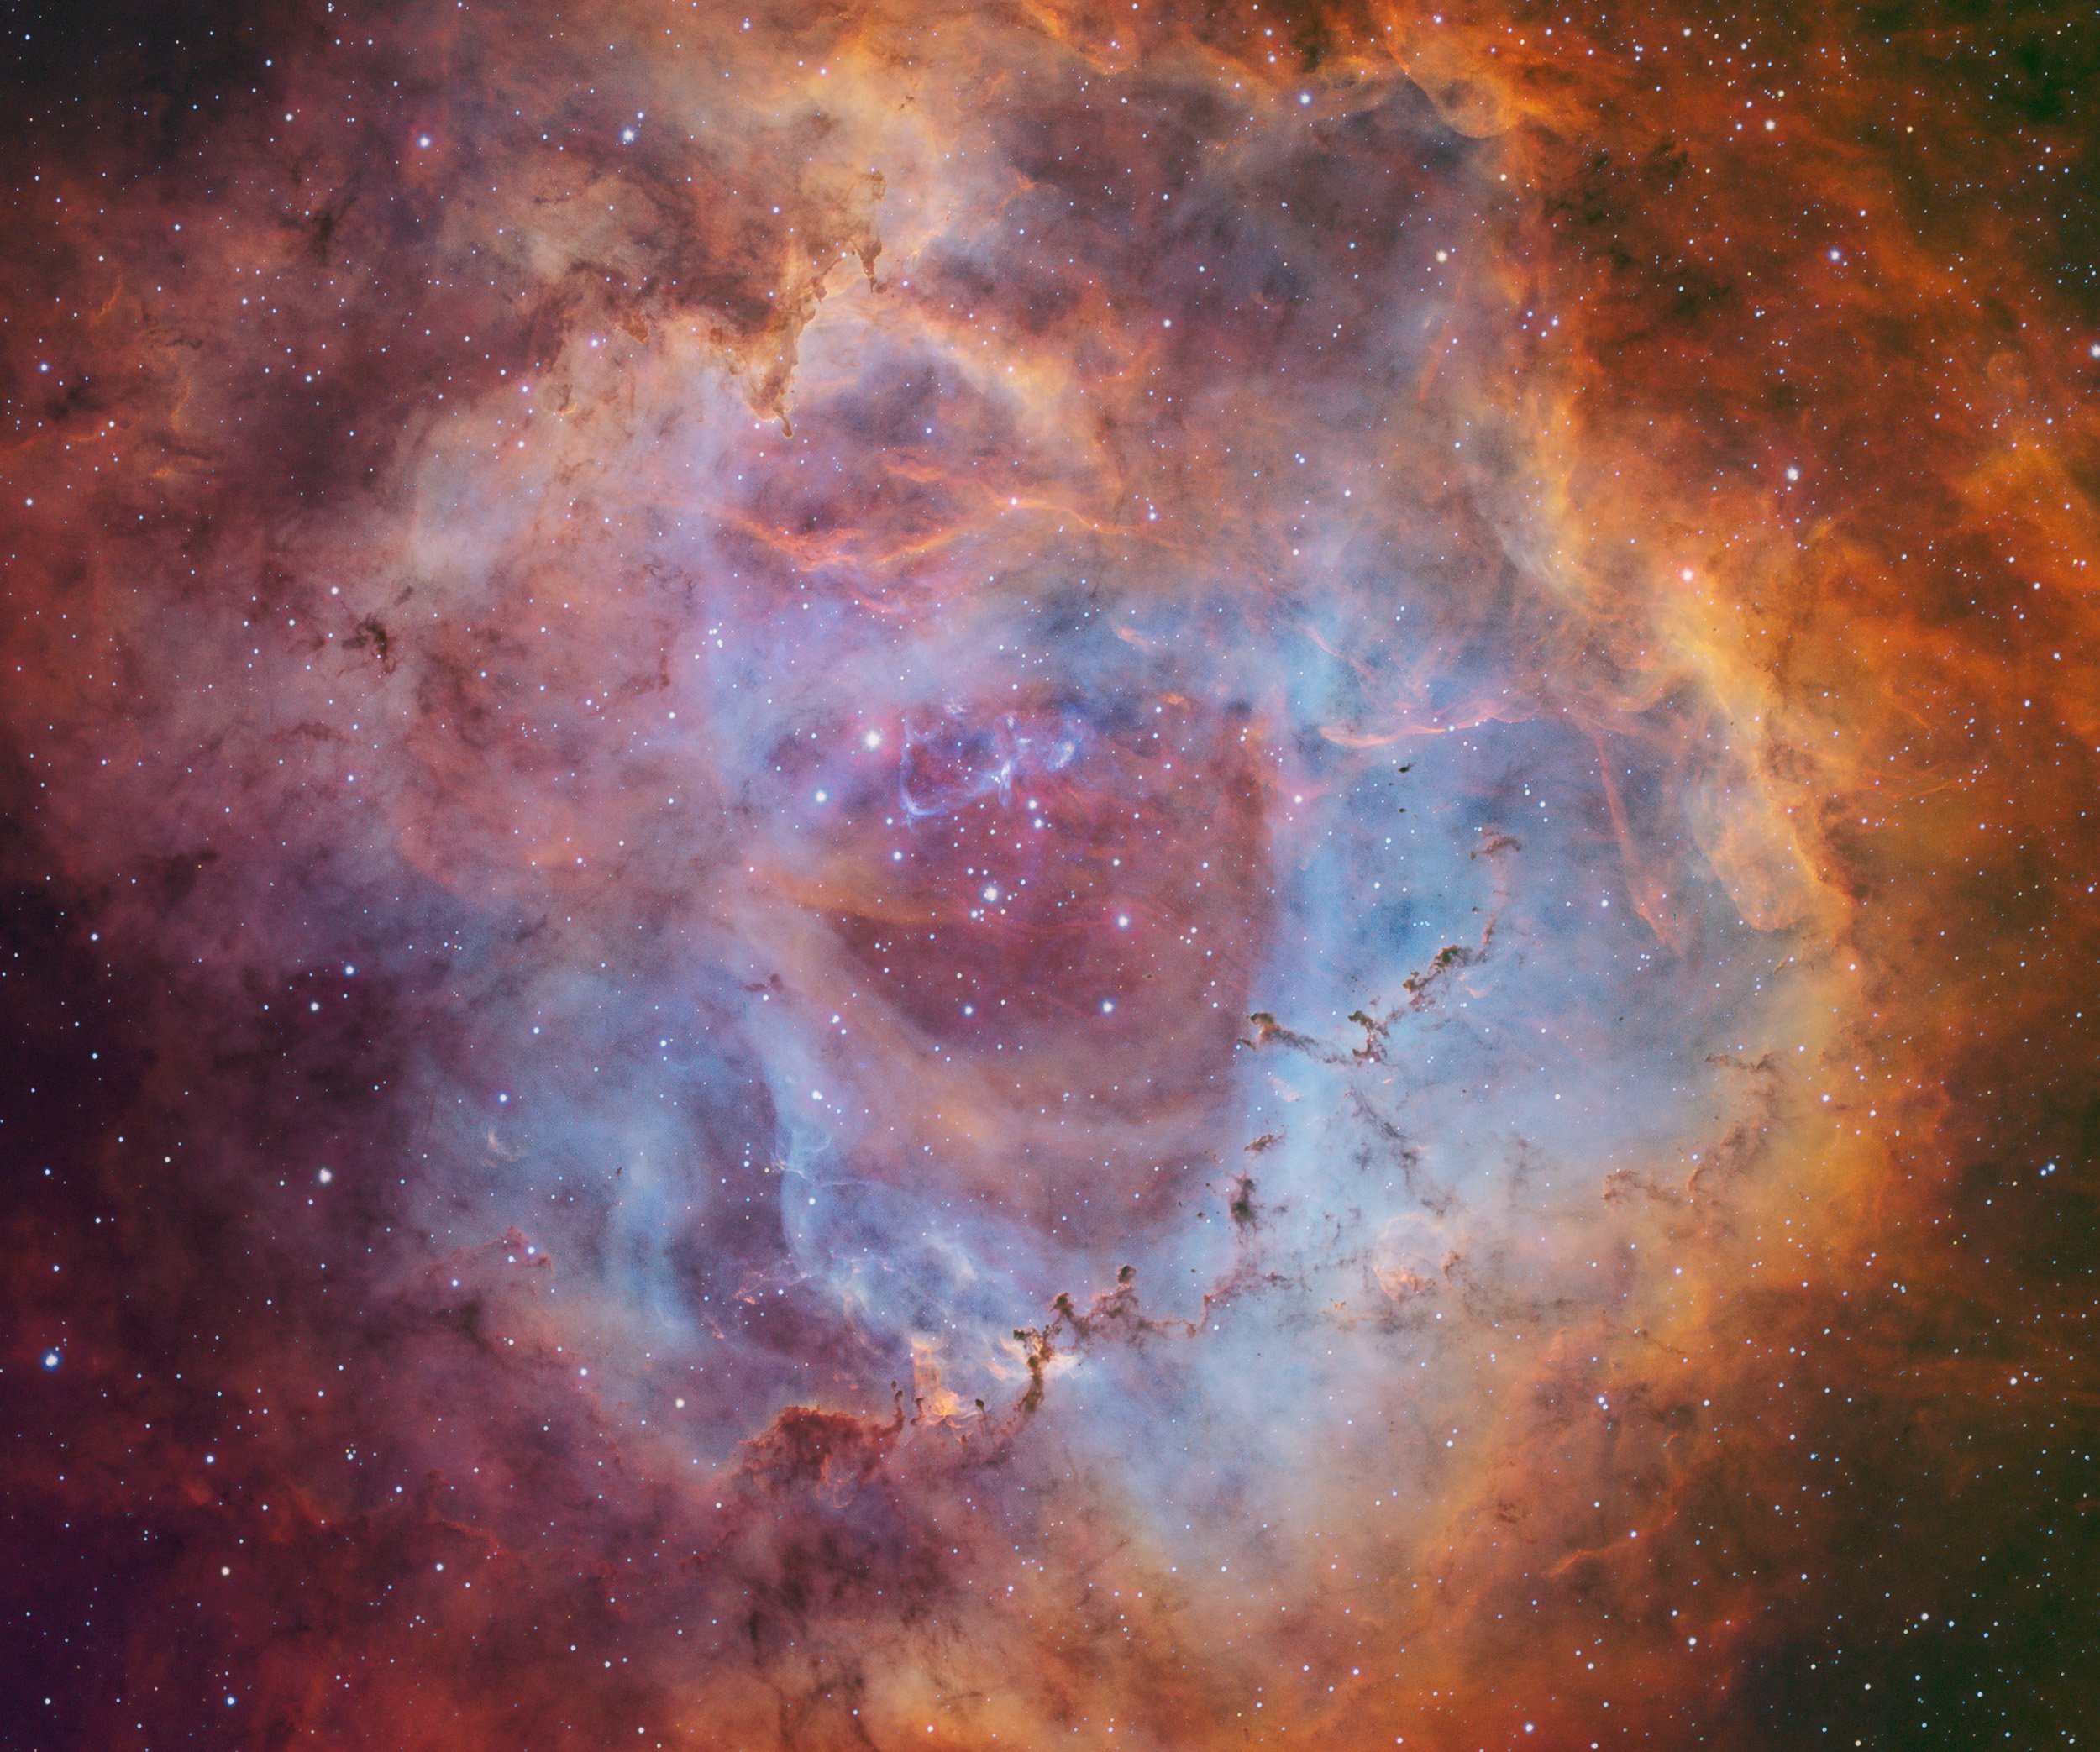 Rosette Nebula in S(ulfer)H(hydrogen)O(xygen) filtered image